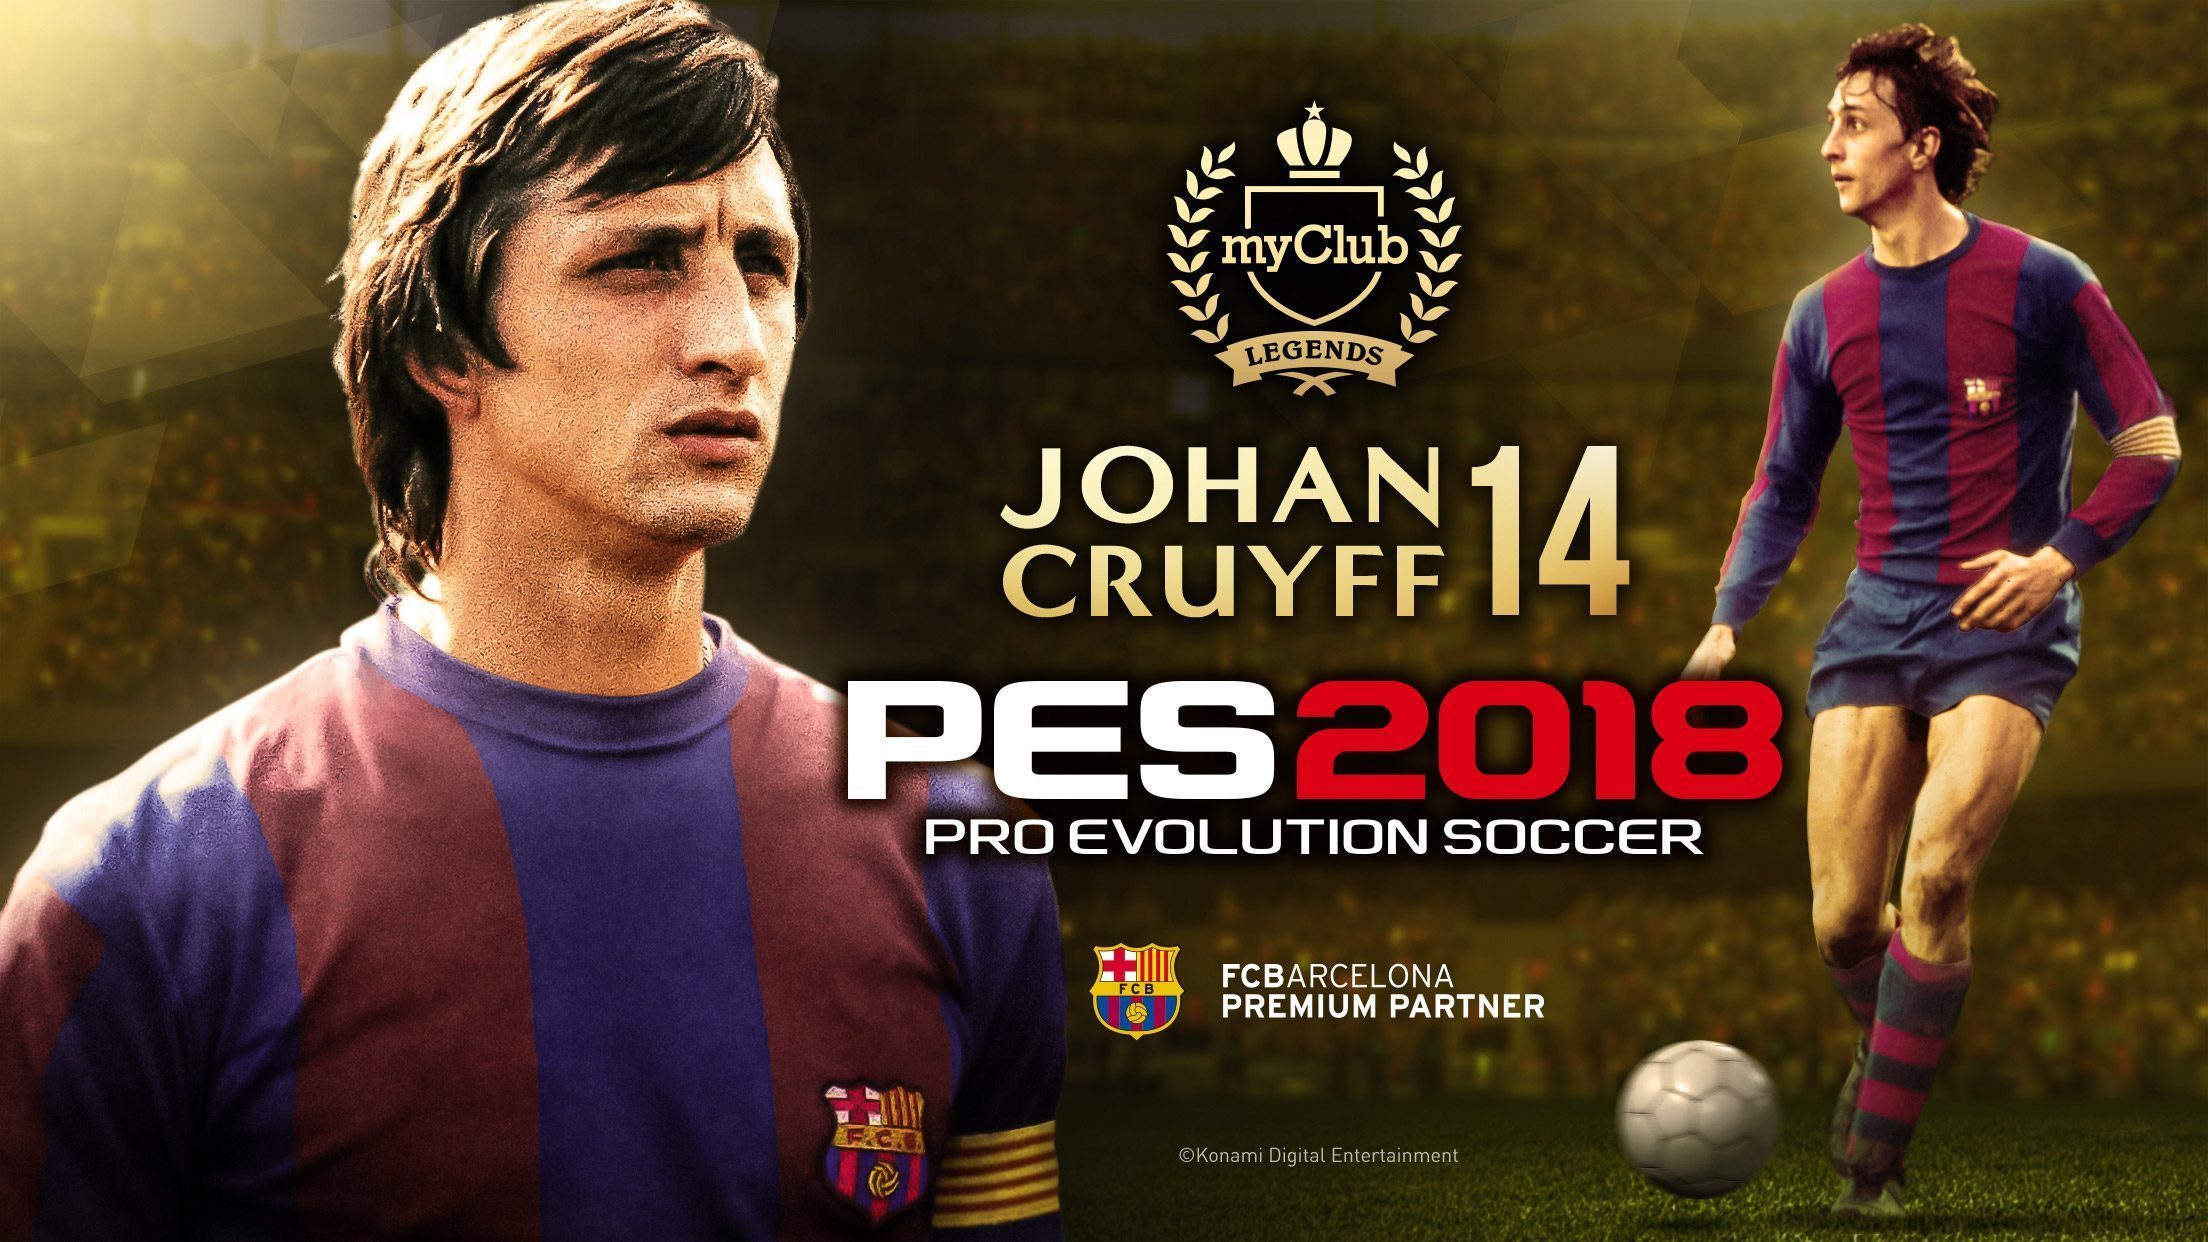 La leyenda del FC Barcelona Johan Cruyff está ya disponible para tu equipo de My Club en PES 2018